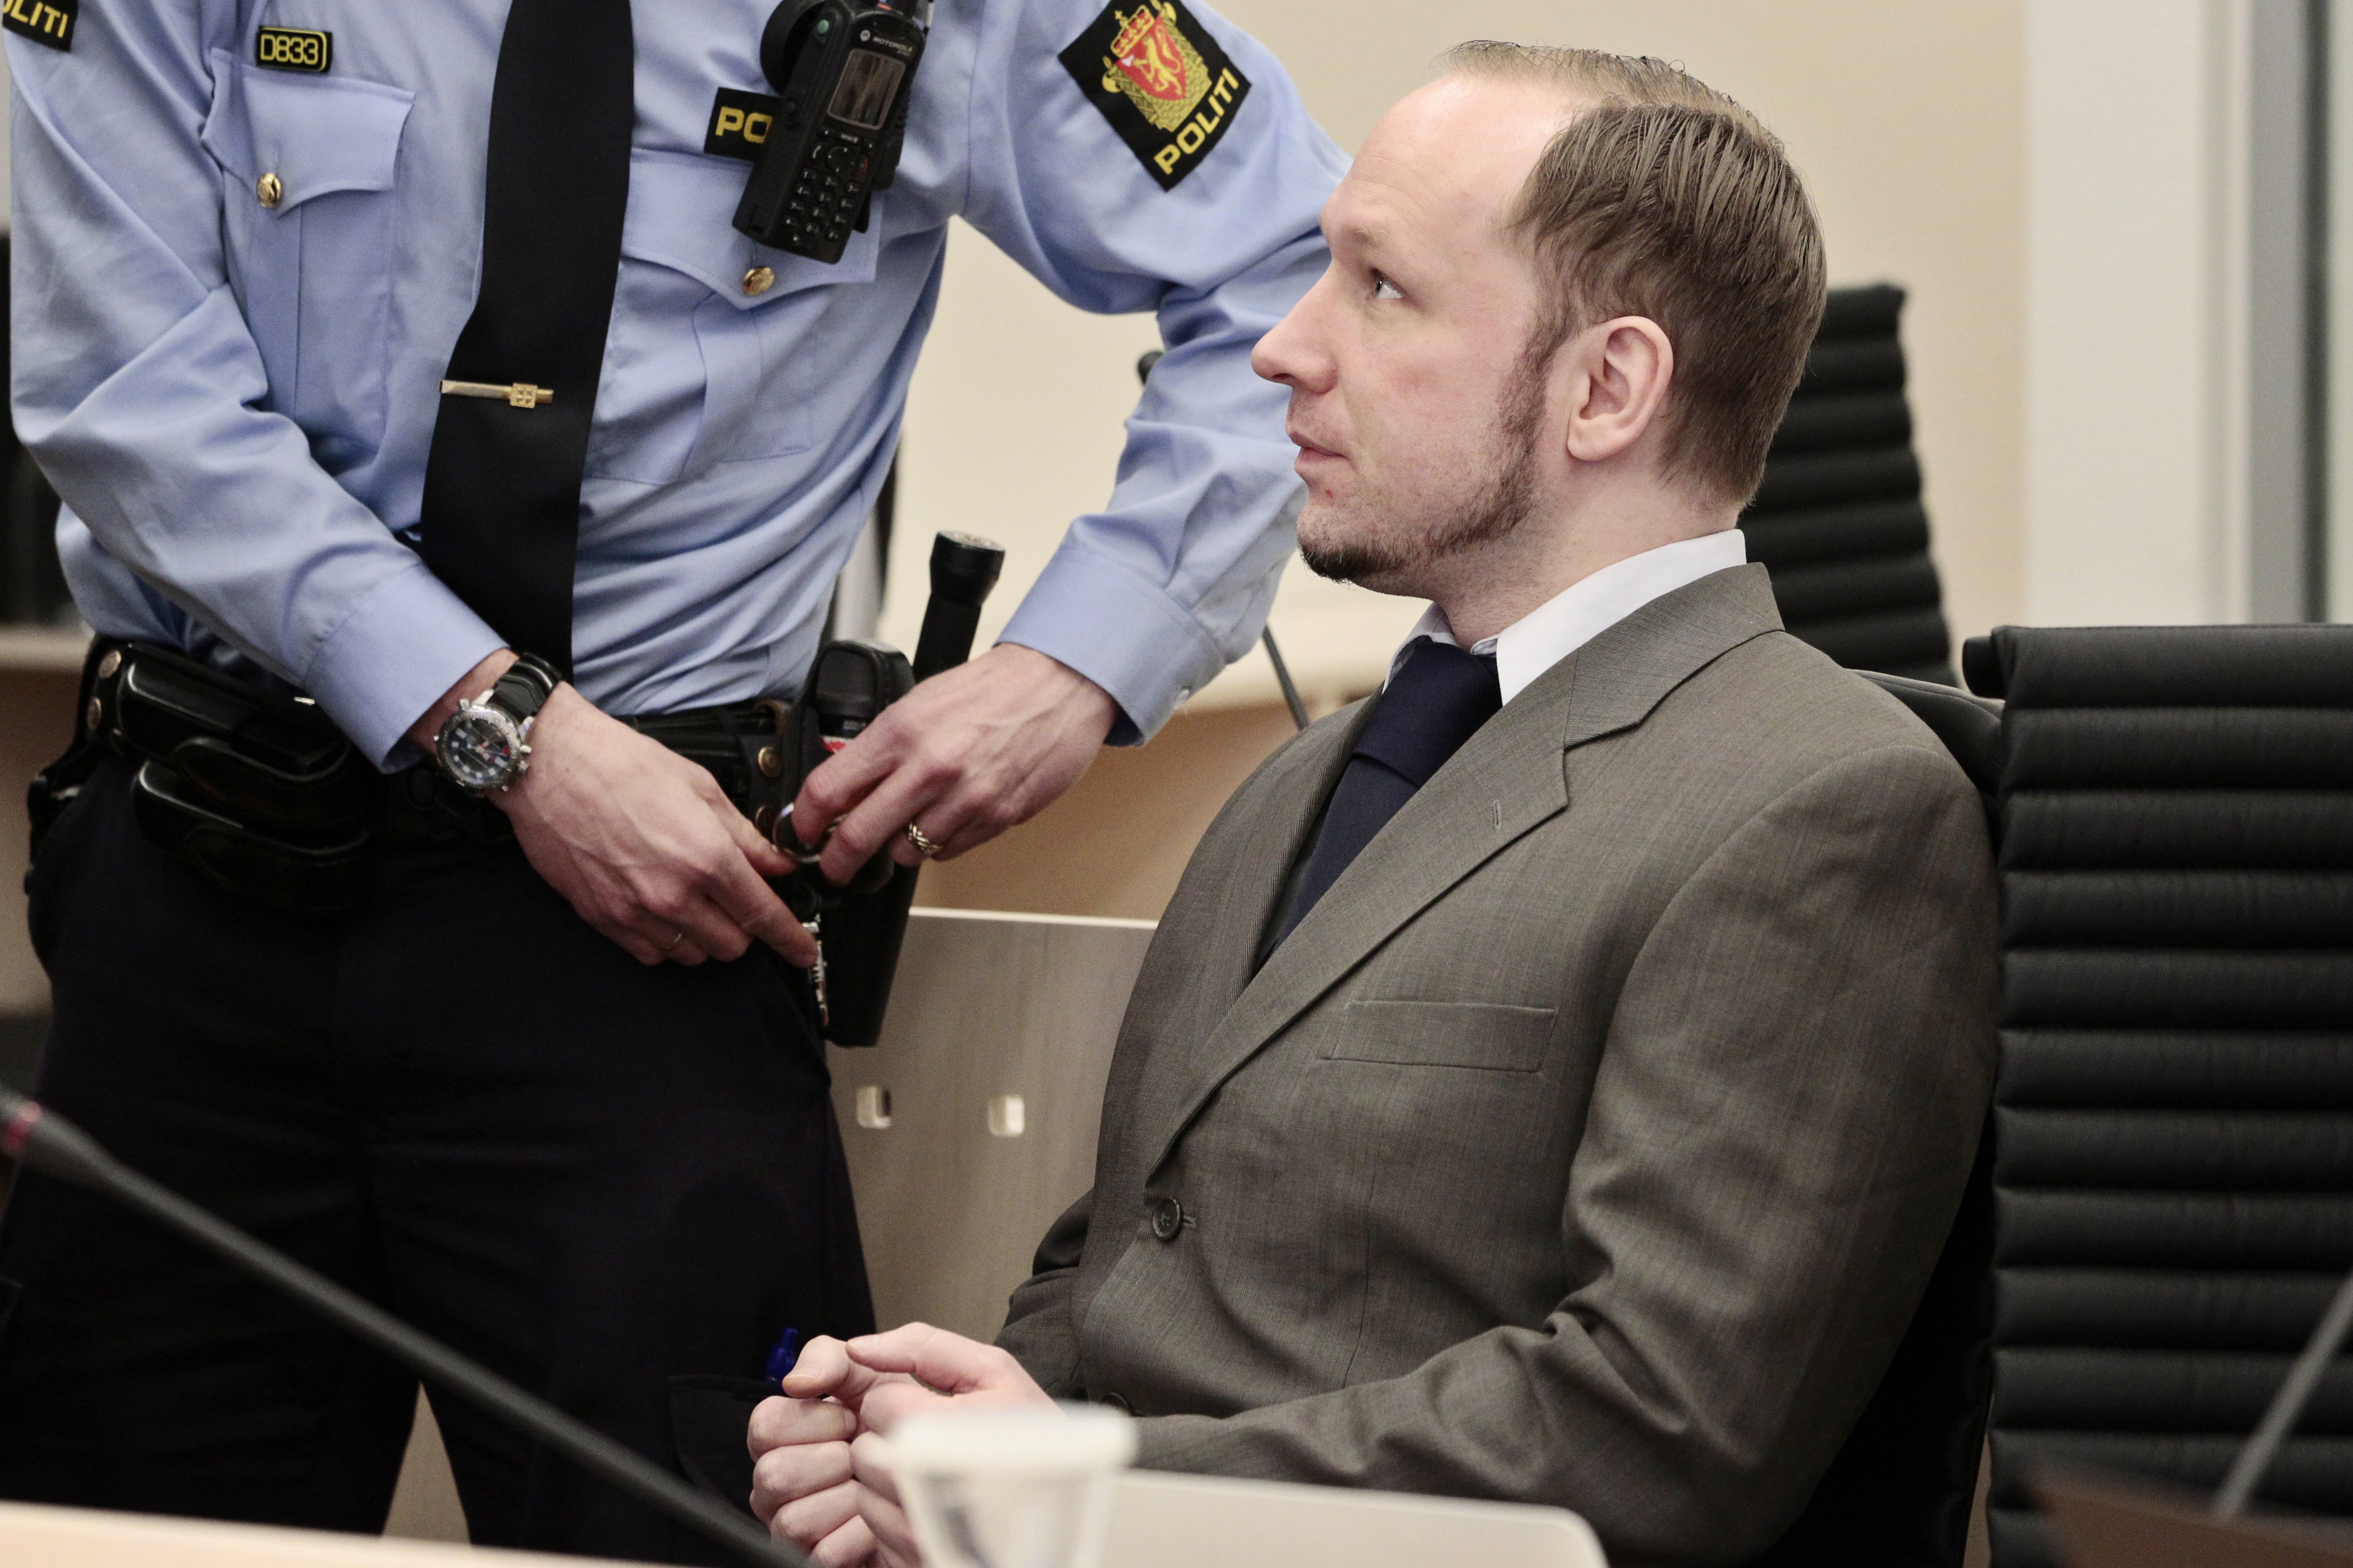 Utøya, Bombattentat, Norge, Oslo, Terrordåd, Skottlossning, Anders Behring Breivik